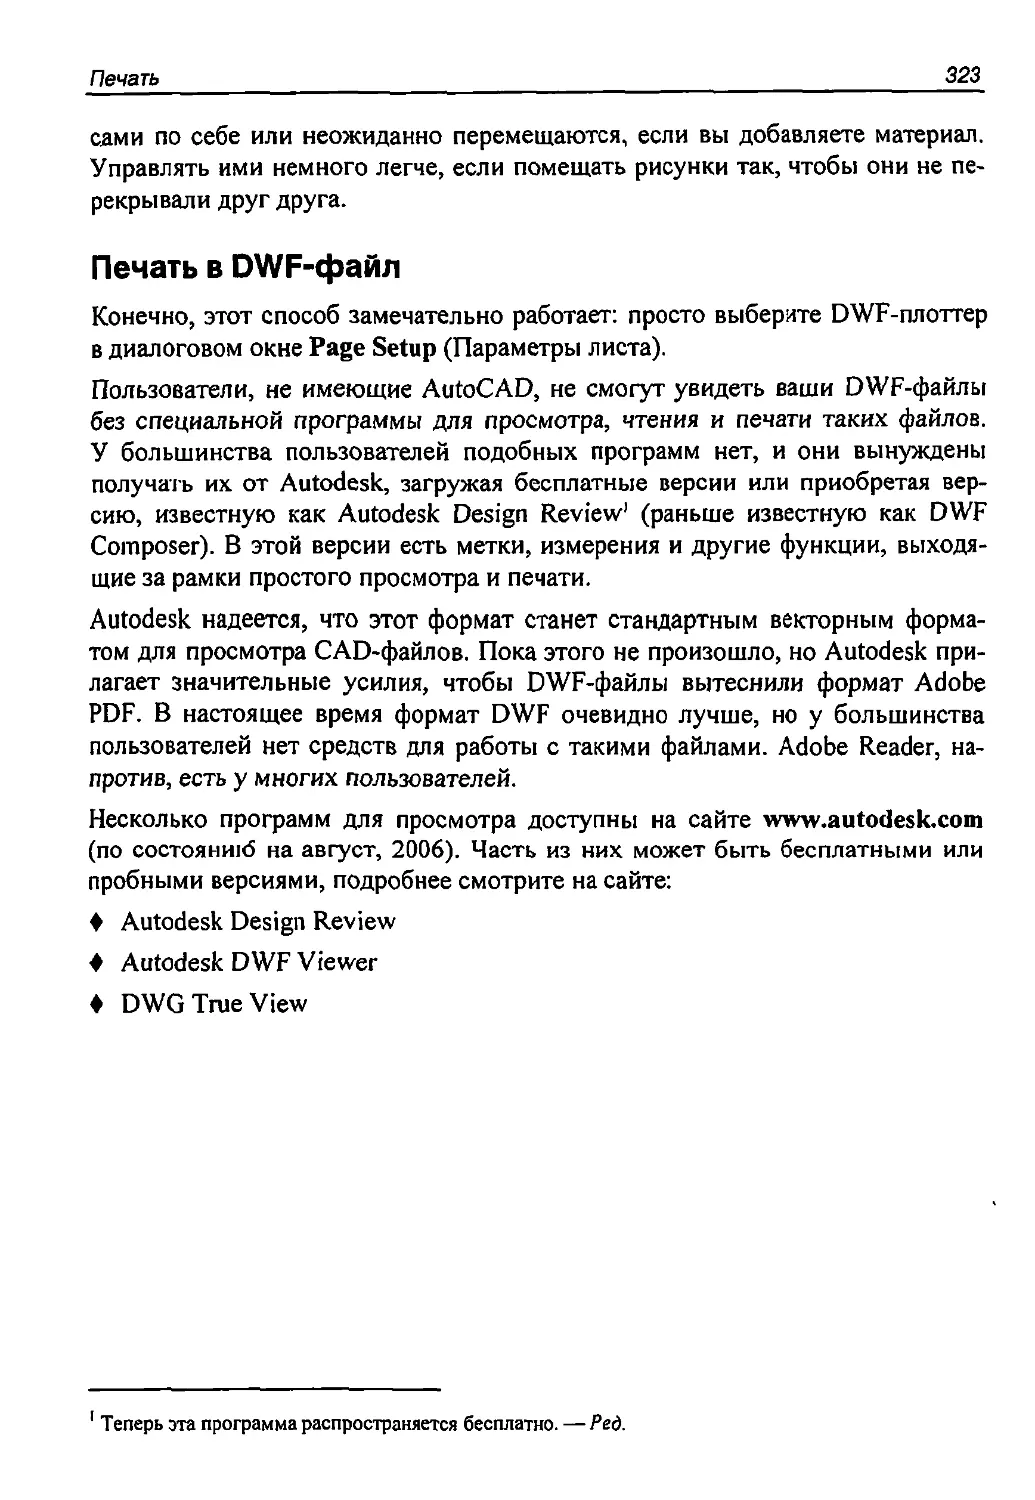 Печать в DWF-файл